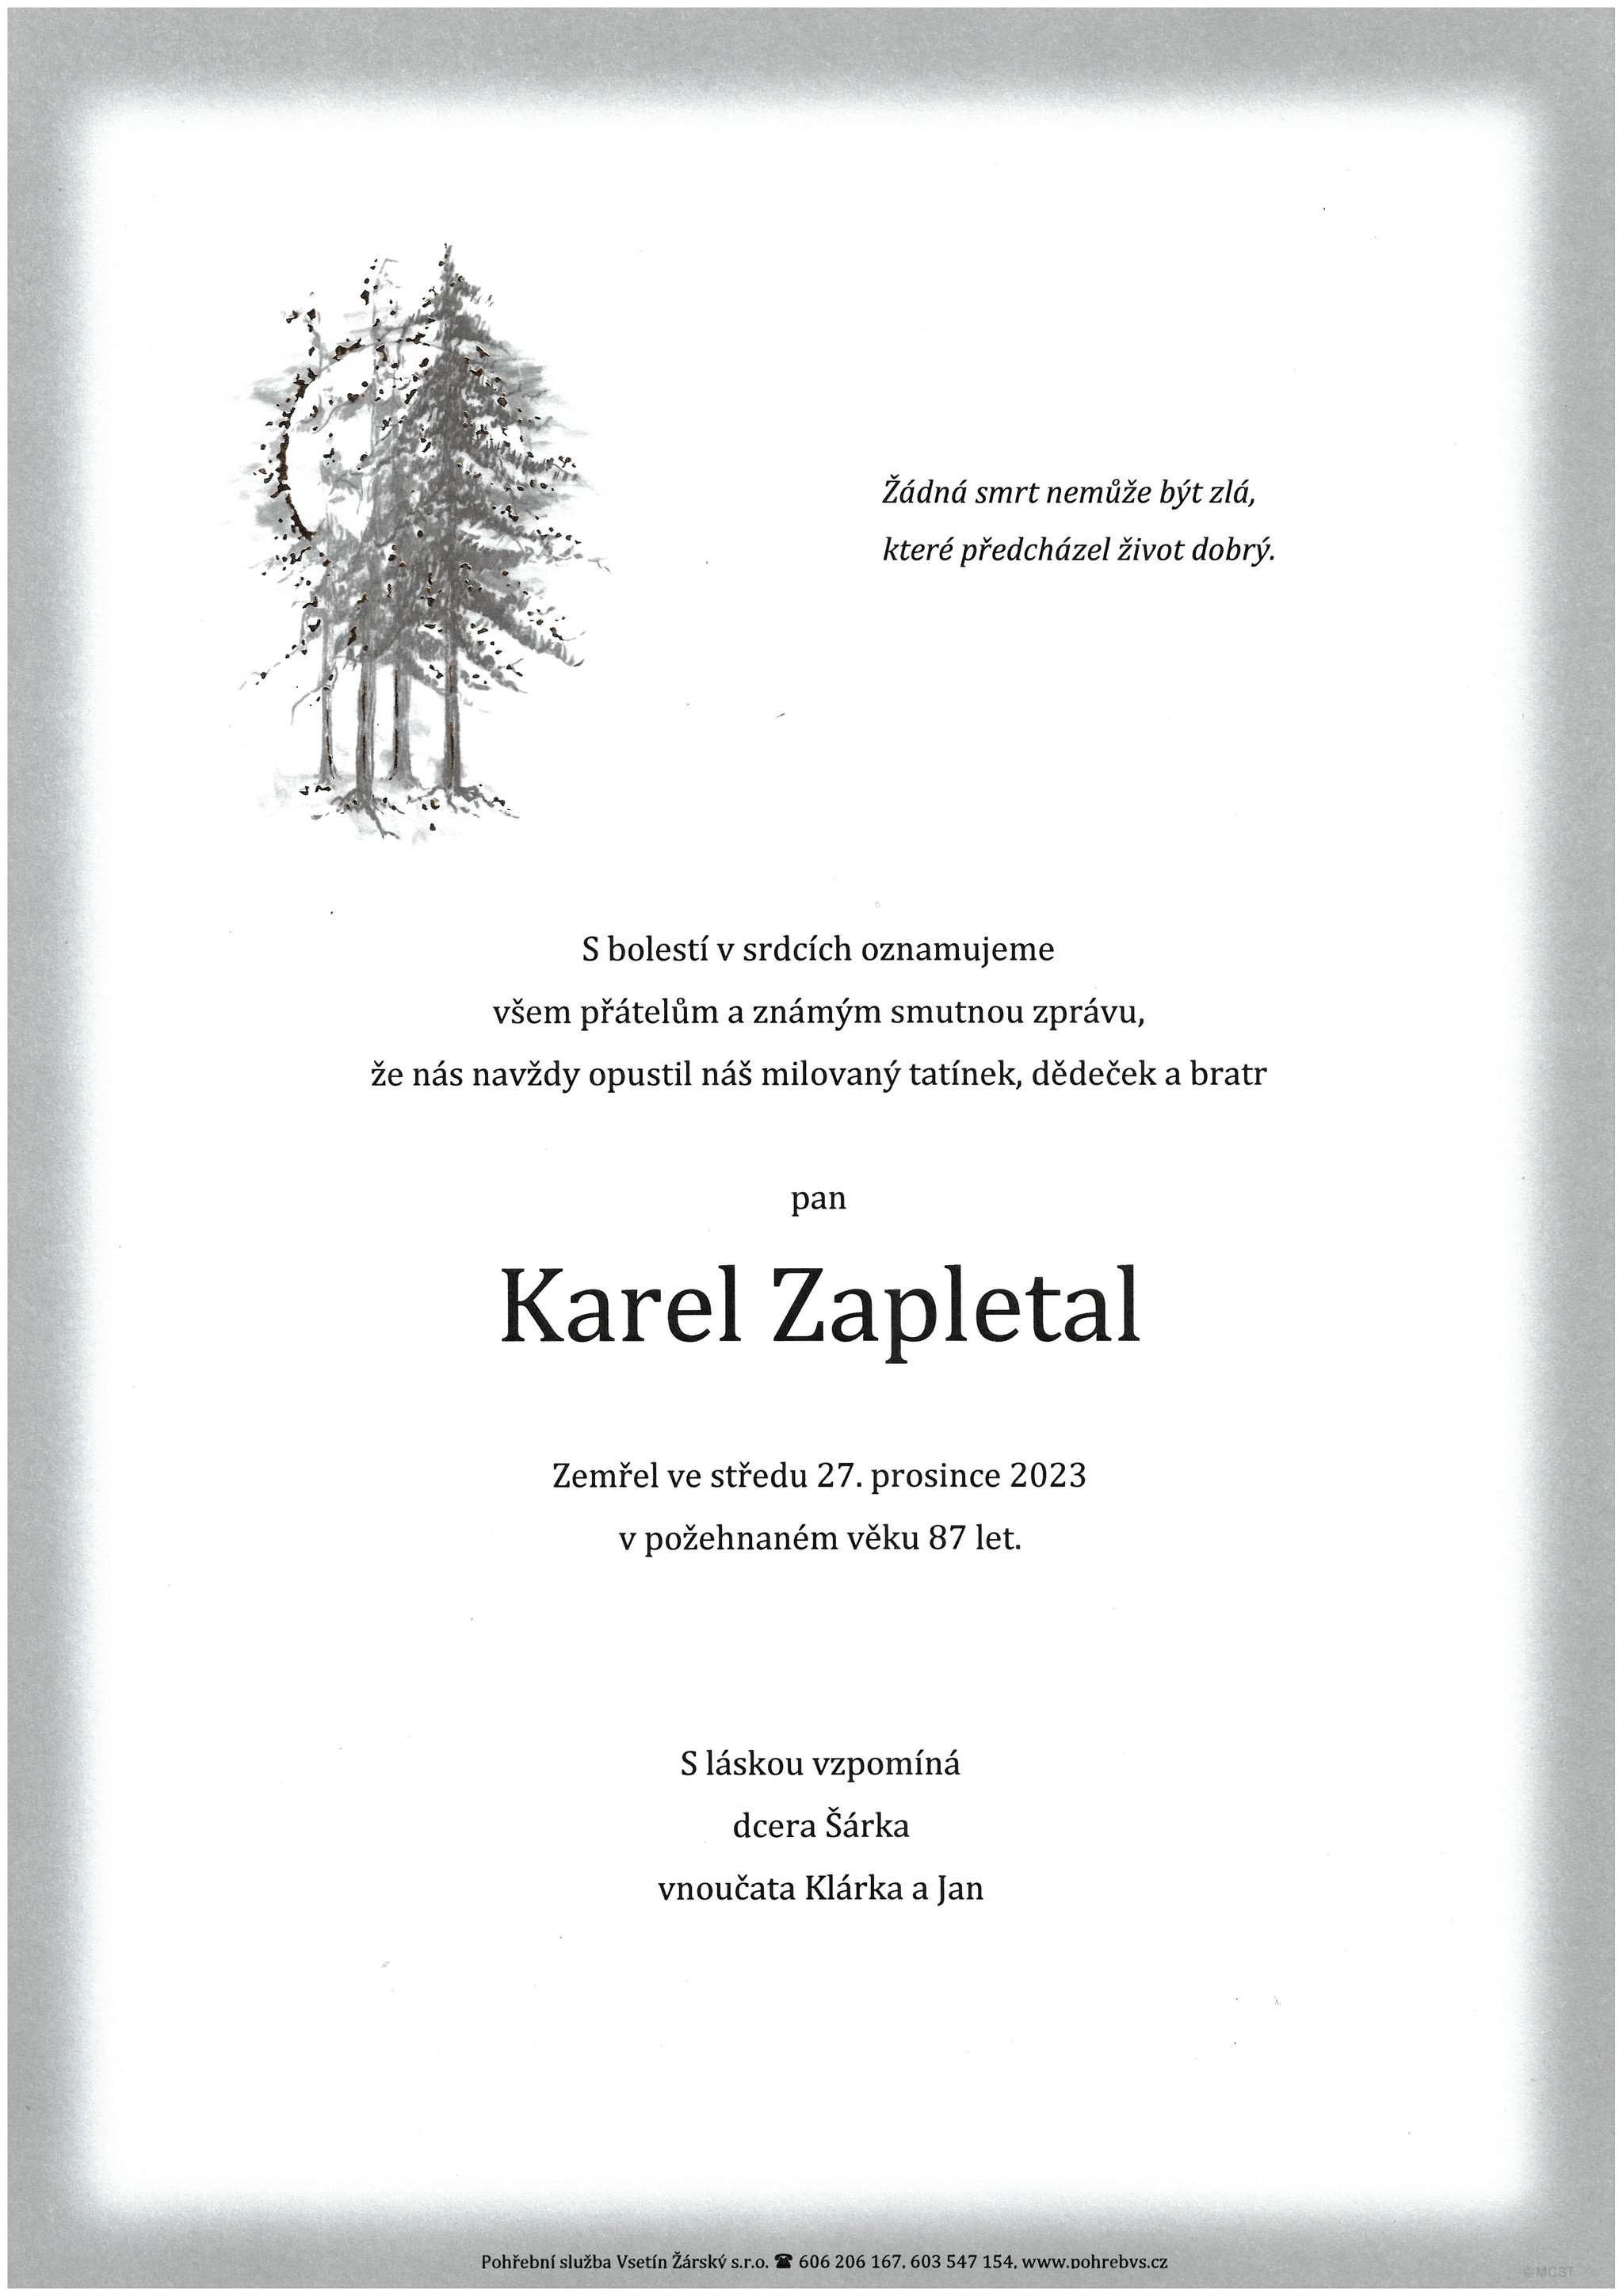 Karel Zapletal